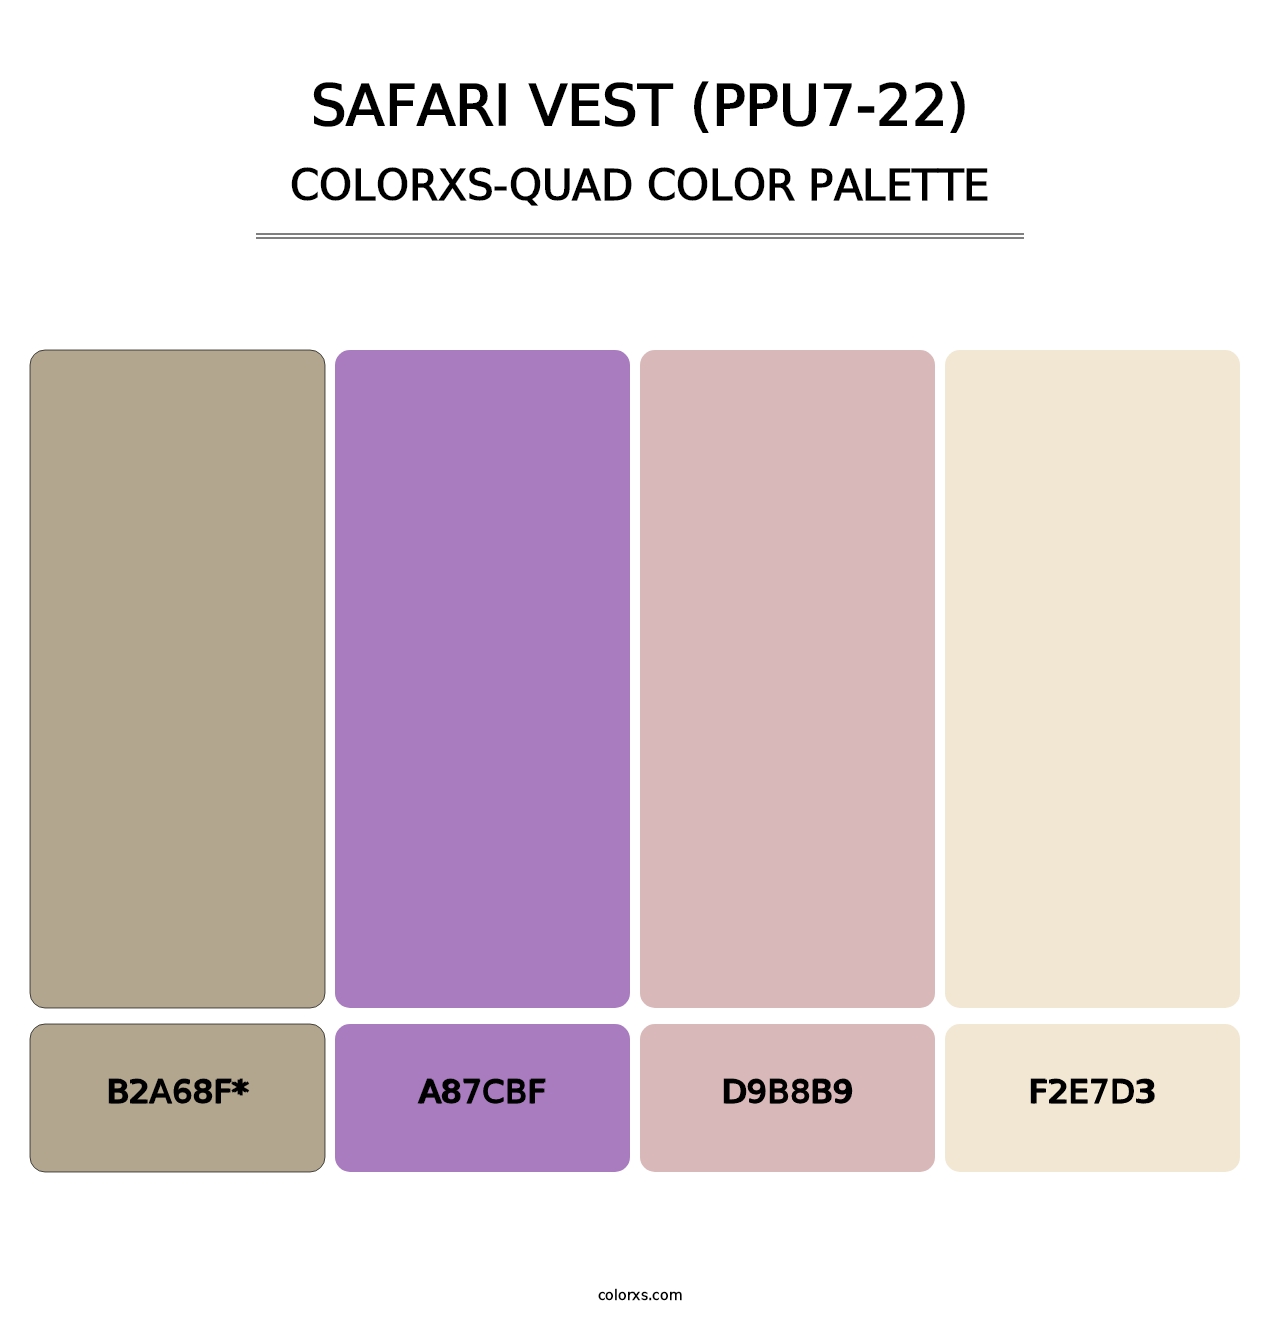 Safari Vest (PPU7-22) - Colorxs Quad Palette